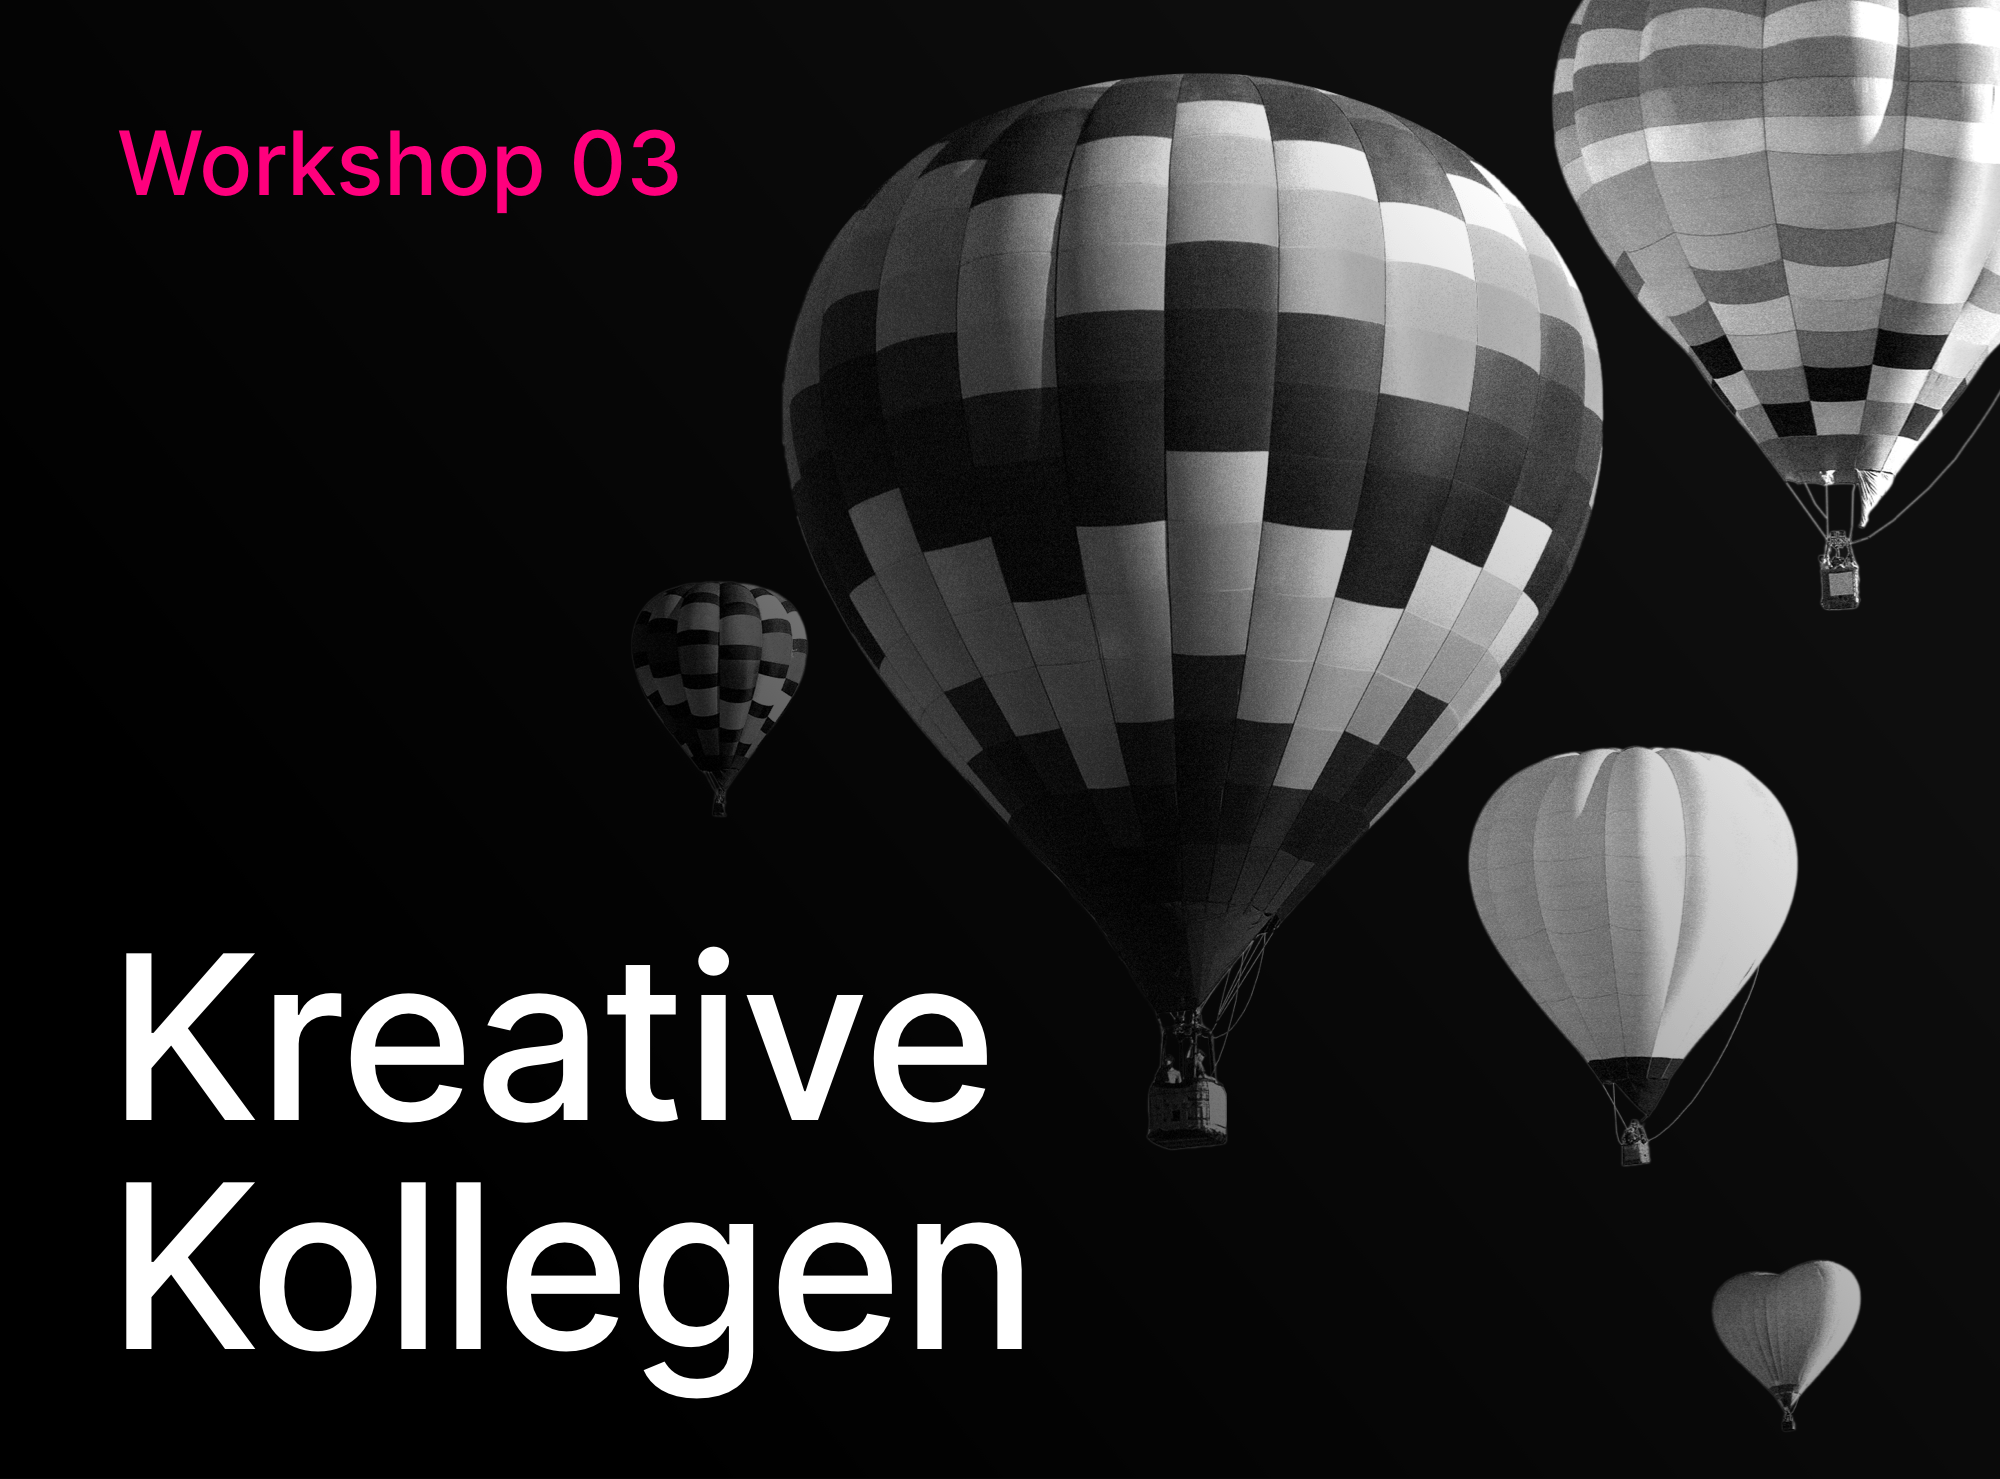 Workshop 03 - Kreative Kollegen